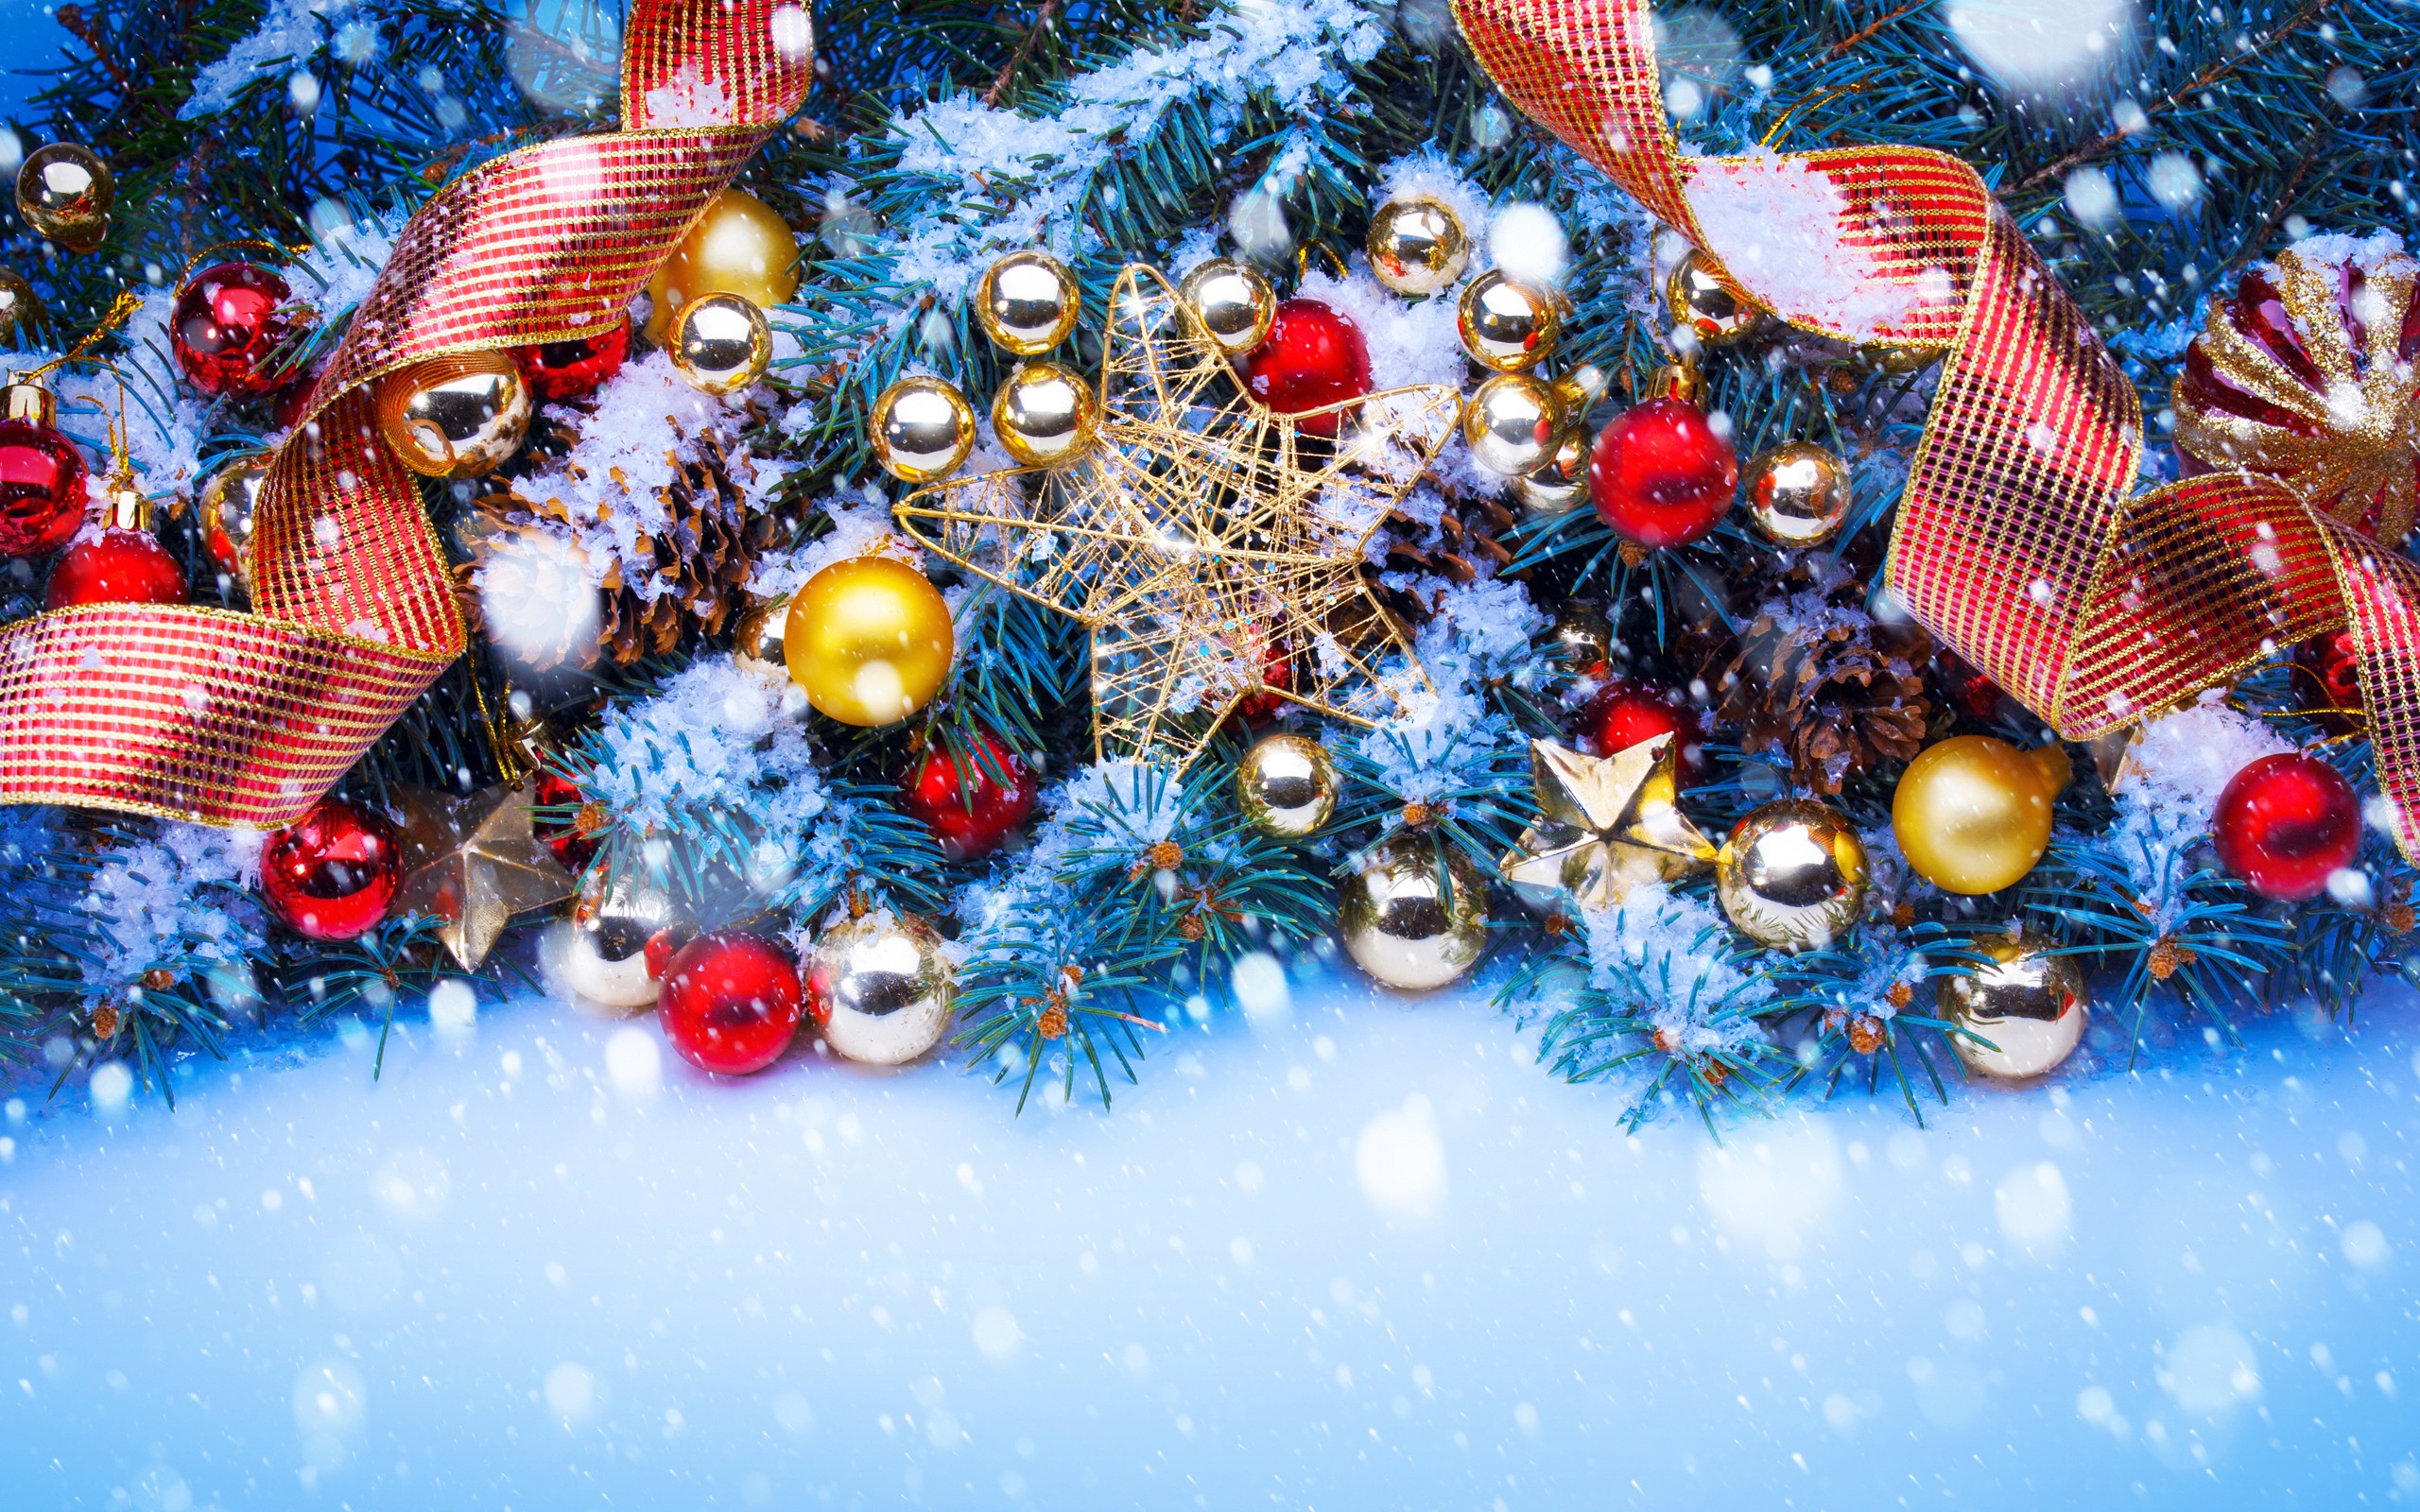 papel tapiz de adorno de navidad,decoración navideña,decoración navideña,árbol de navidad,navidad,árbol